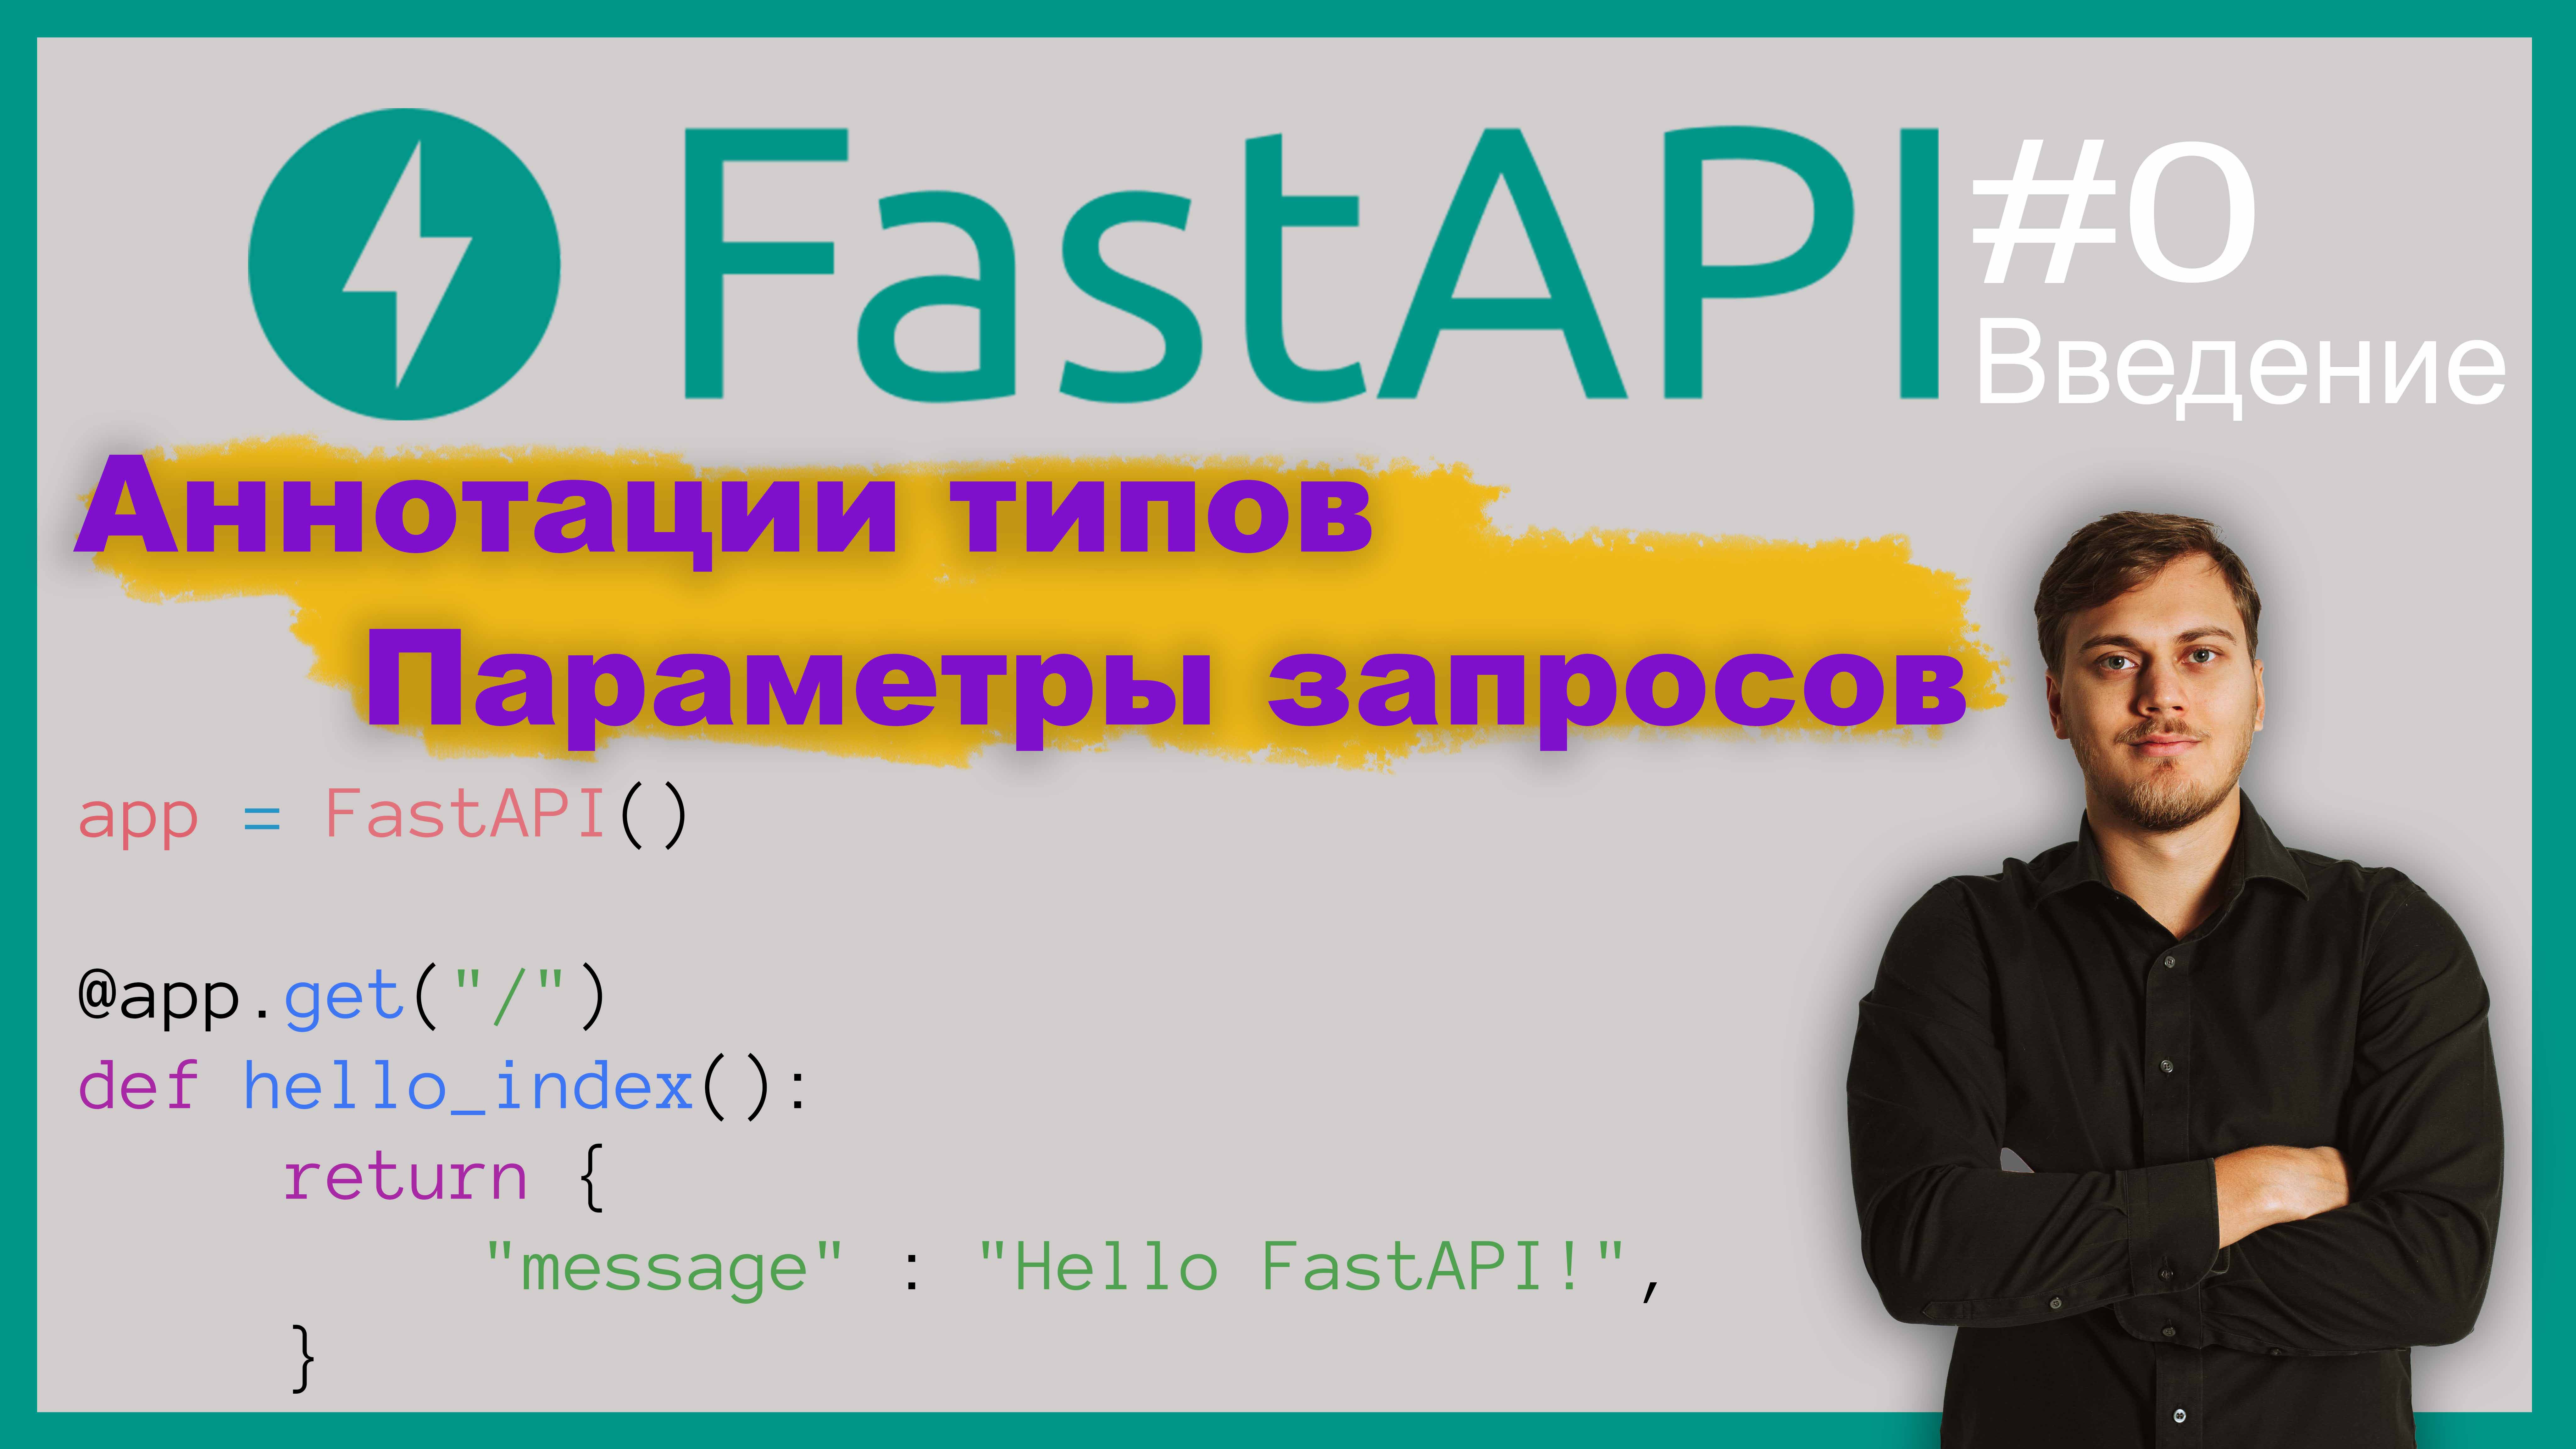 Веб-приложение на FastAPI. Знакомство; параметры запросов; аннотации типов. Видео 0